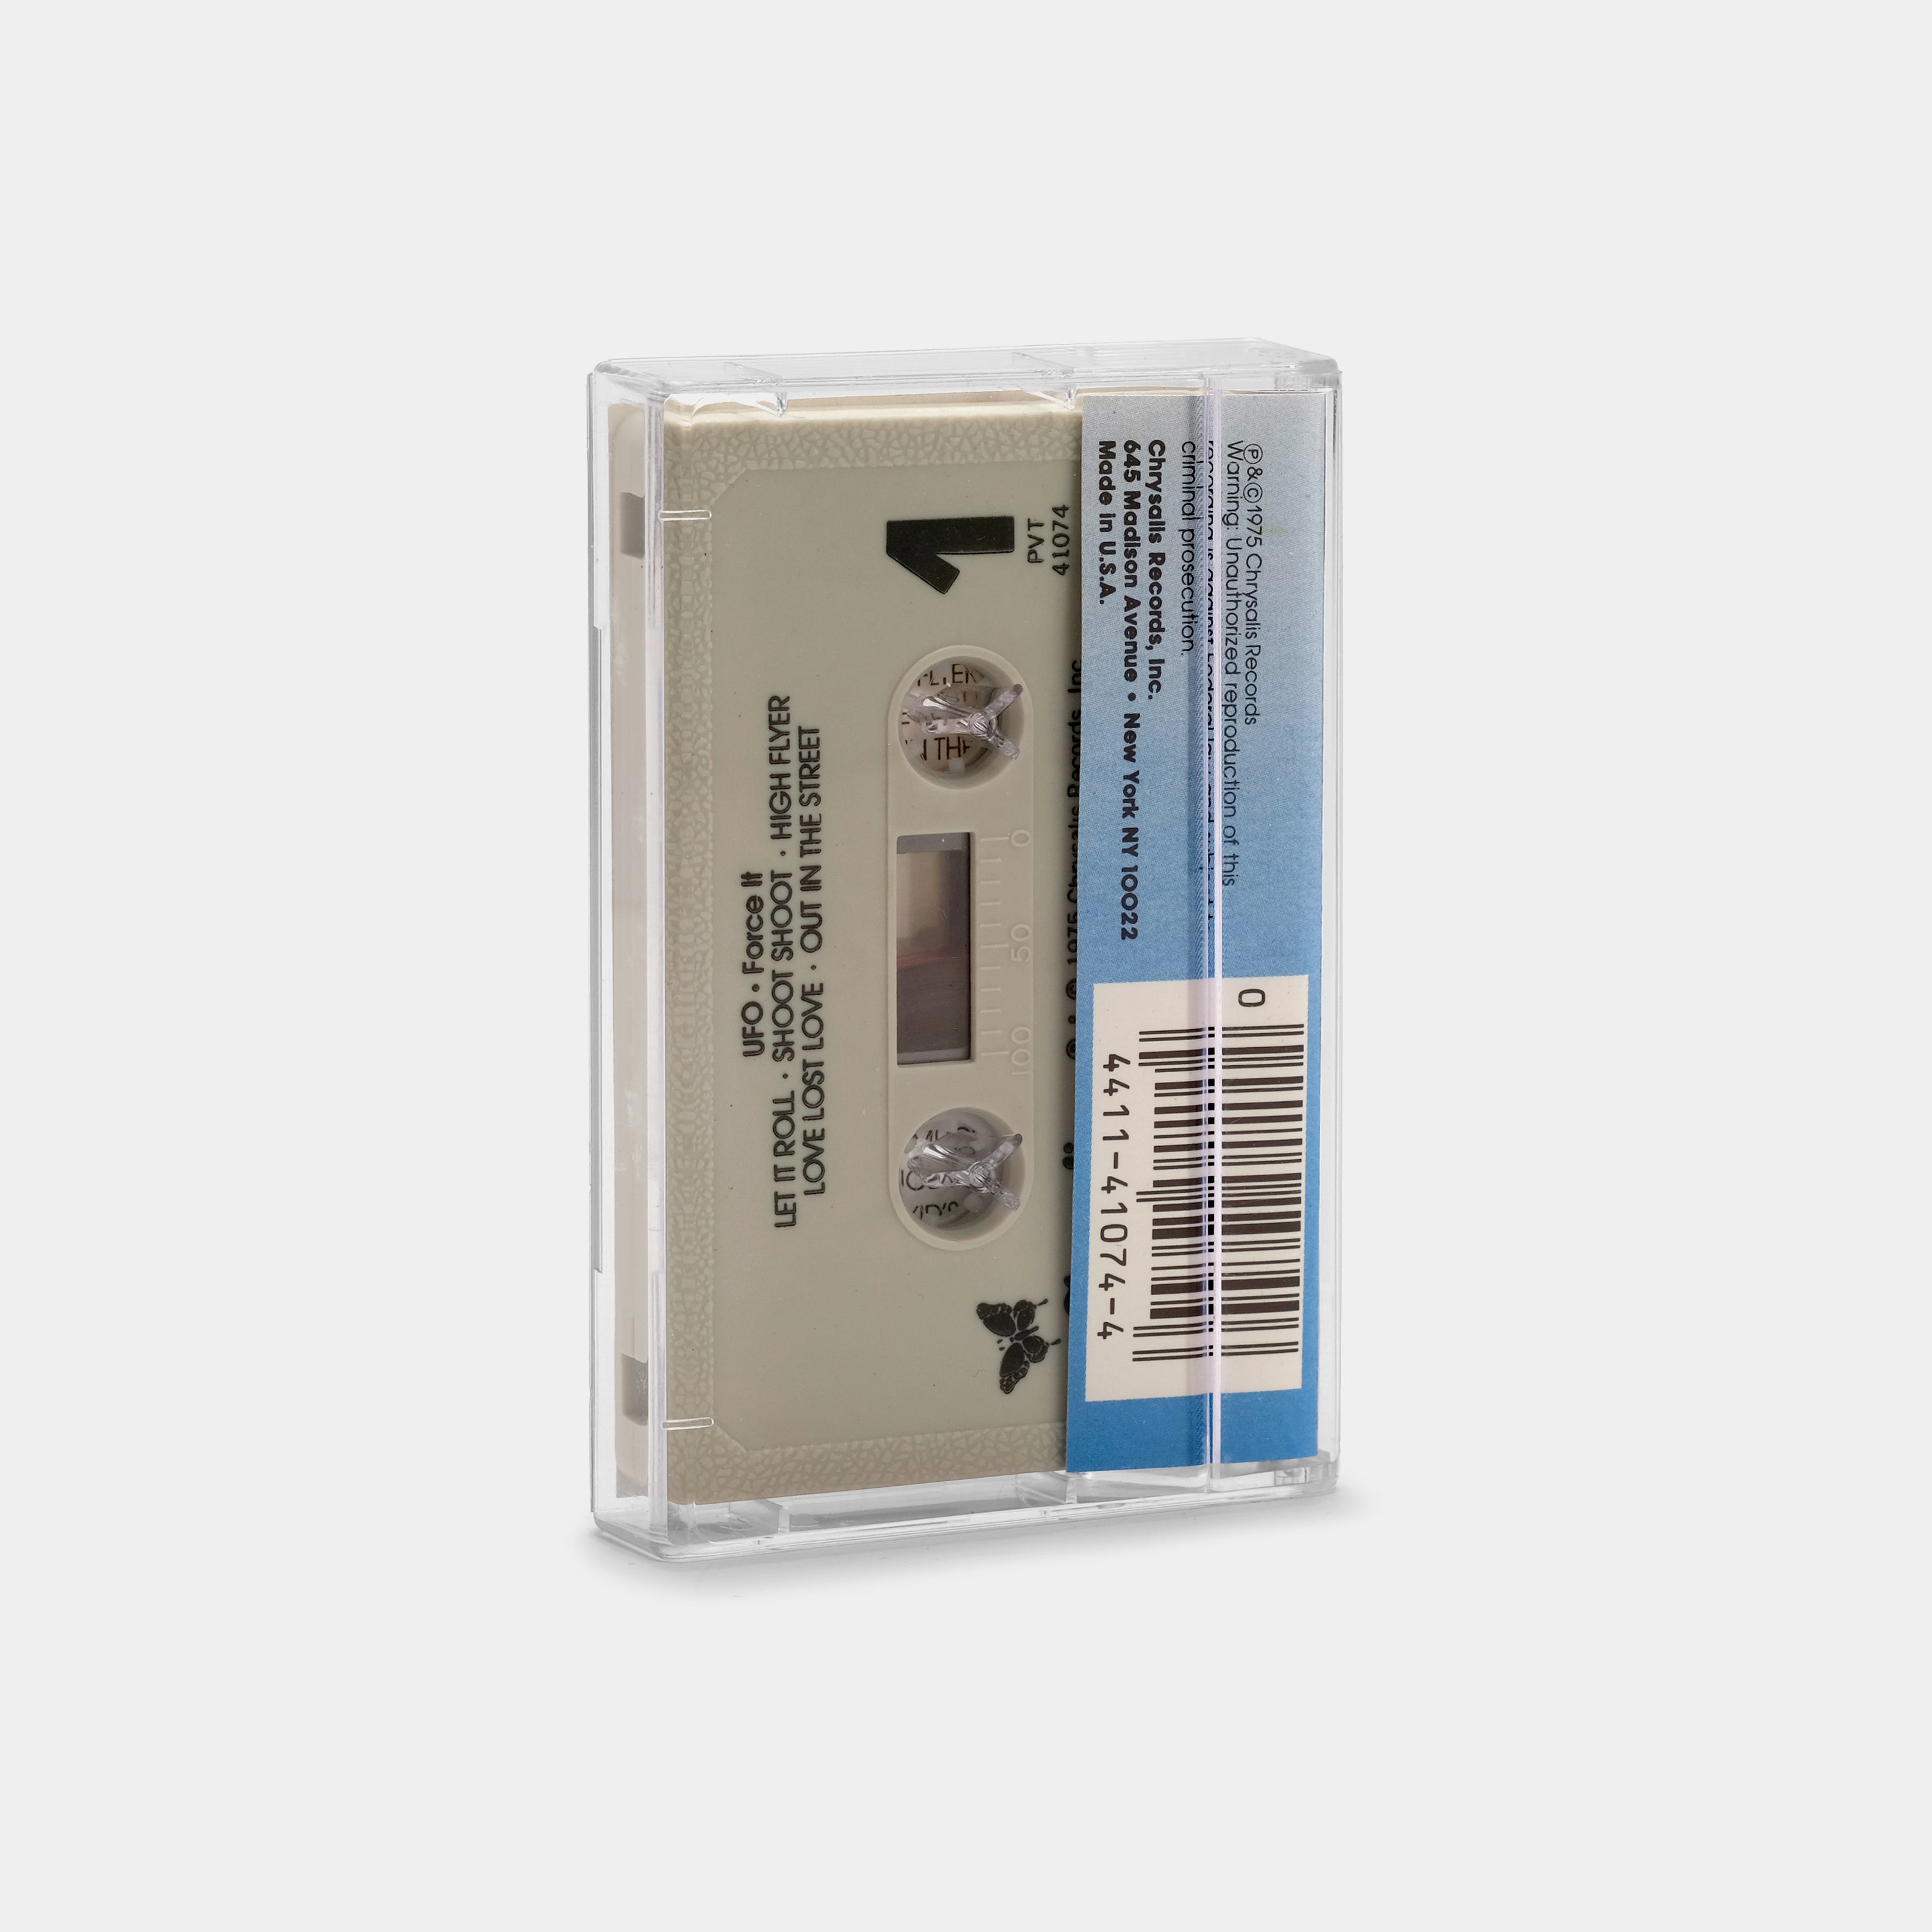 UFO - Force It Cassette Tape